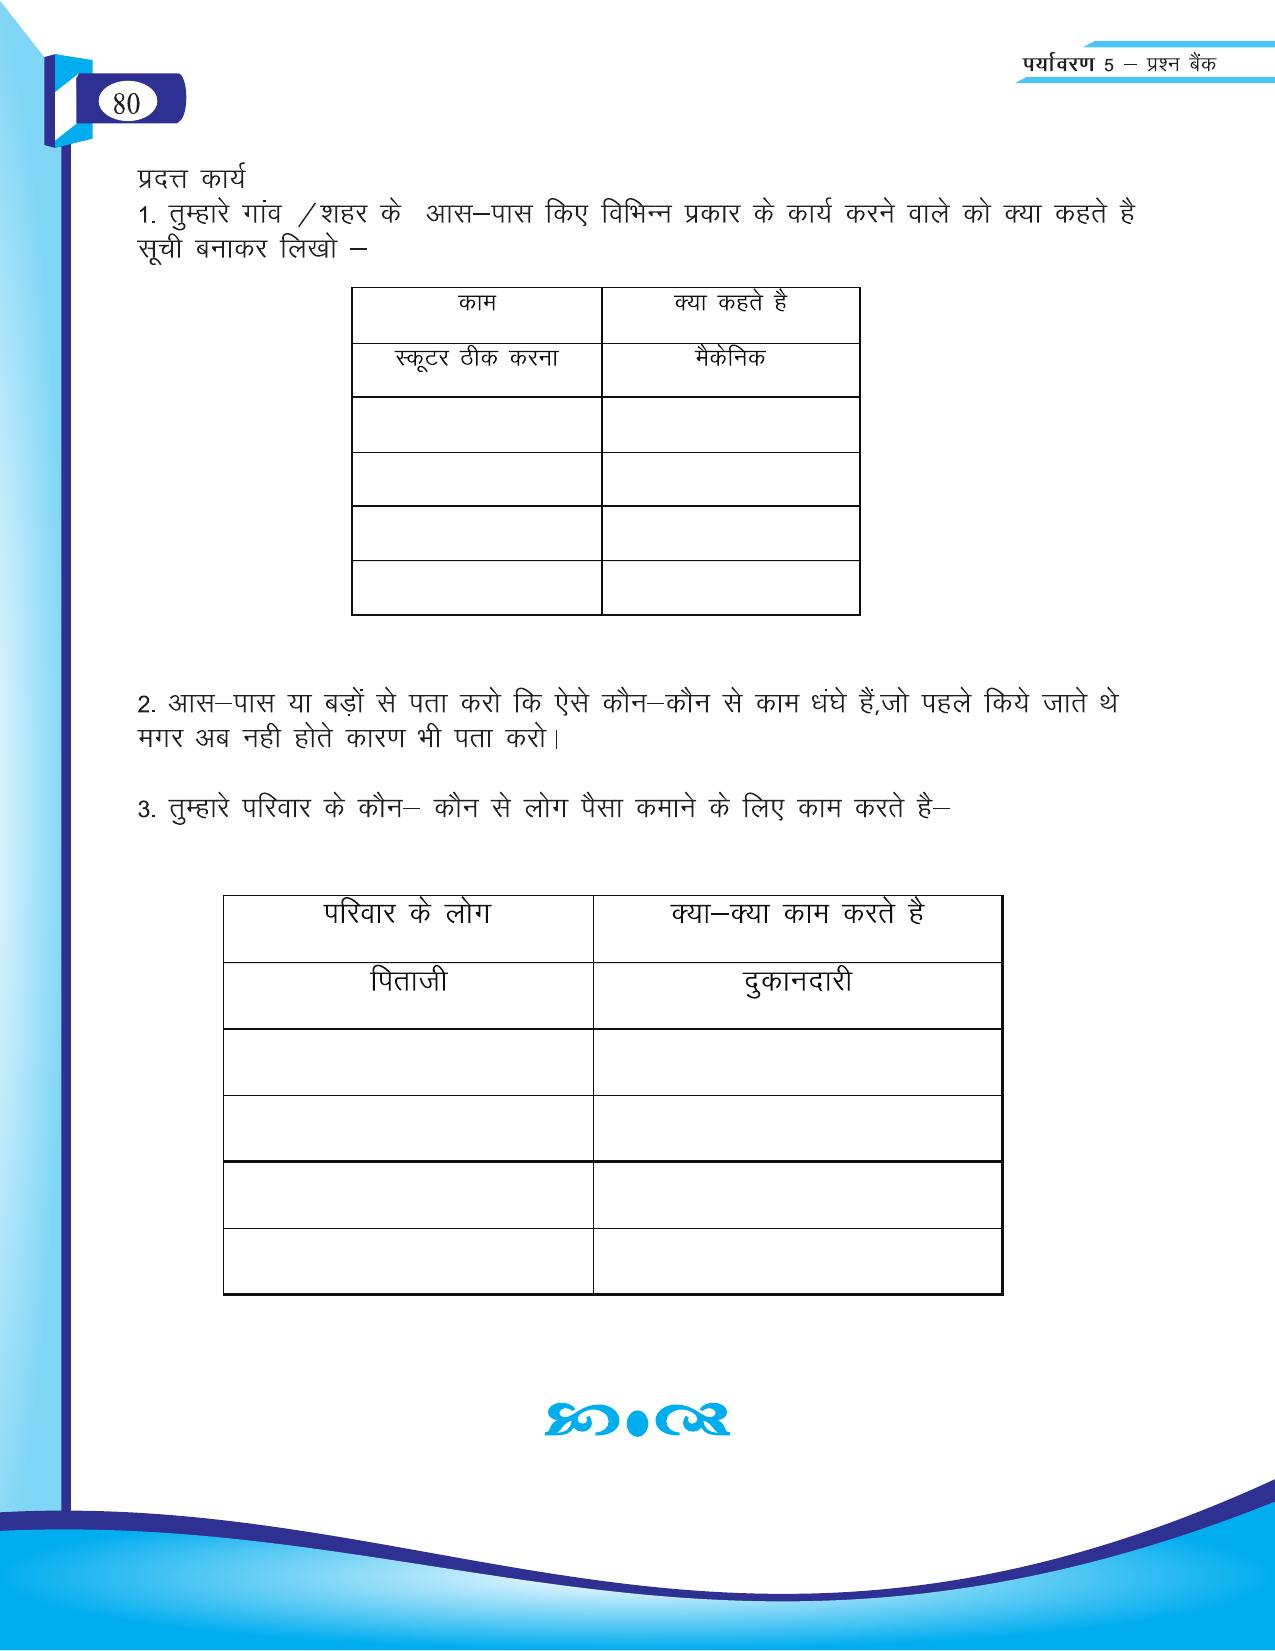 Chhattisgarh Board Class 5 EVS Question Bank 2015-16 - Page 6